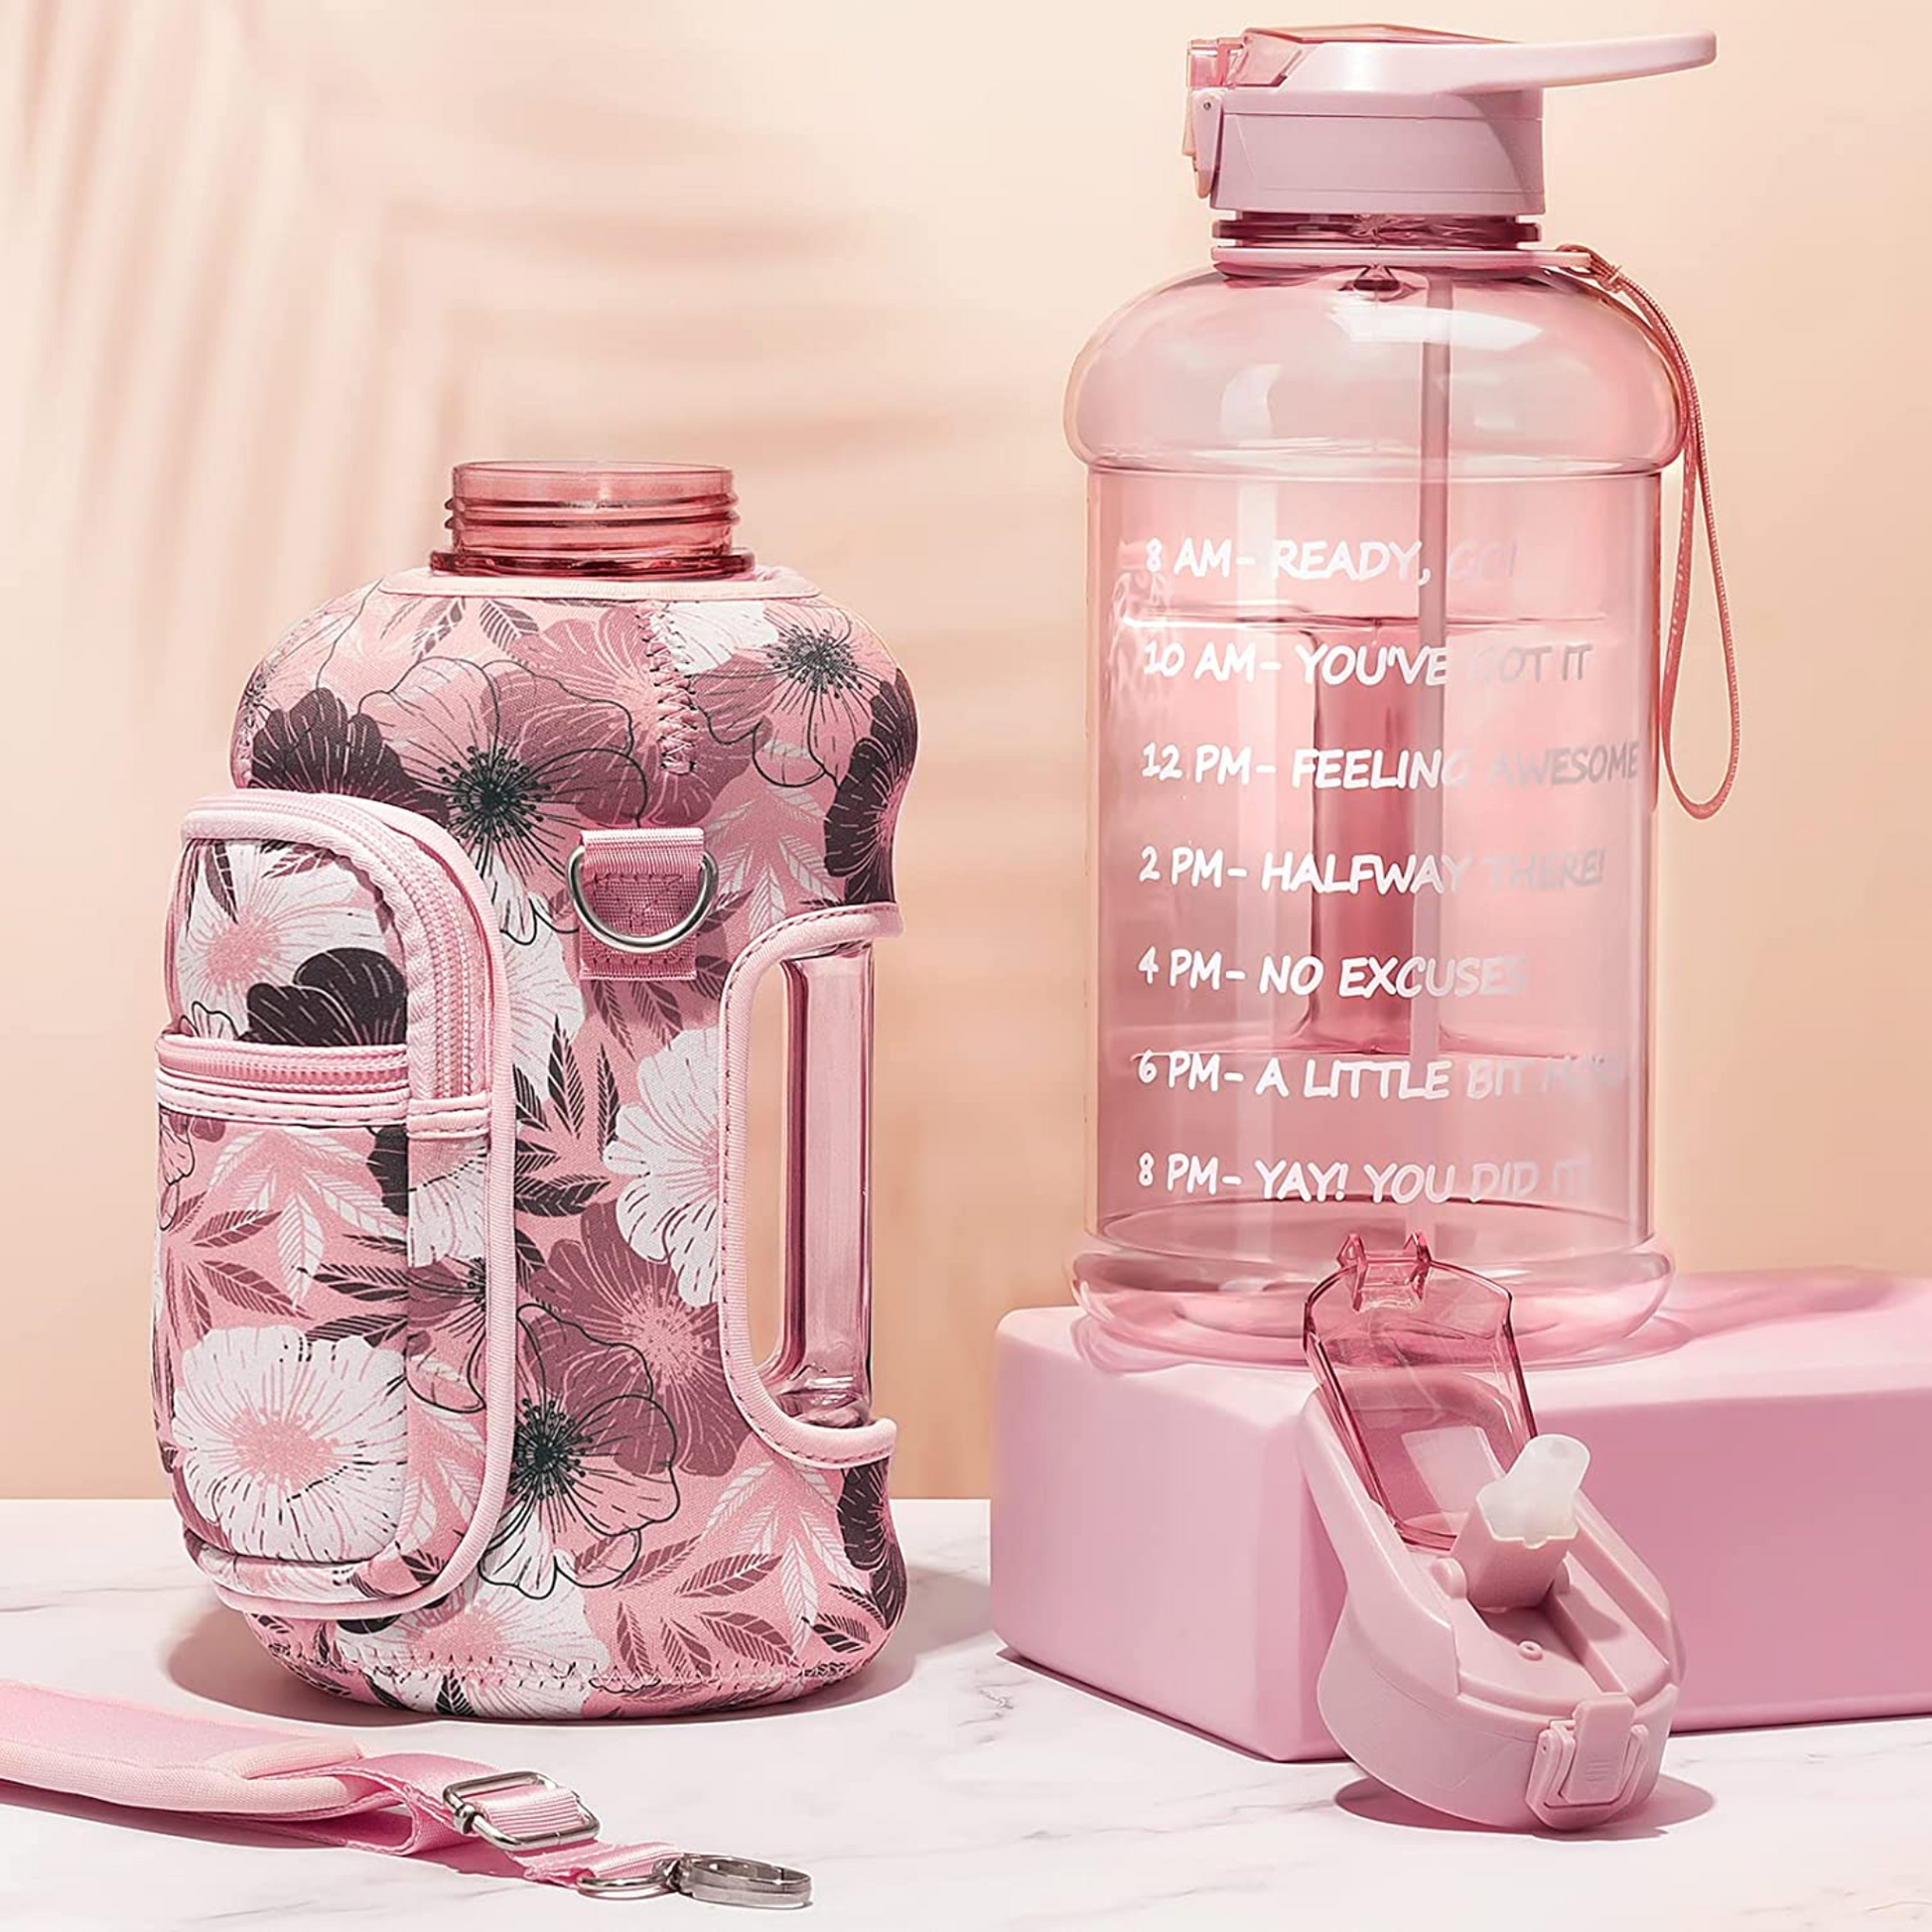 1 Gallon Pink Water Bottle w/ Handle & Steel Cap